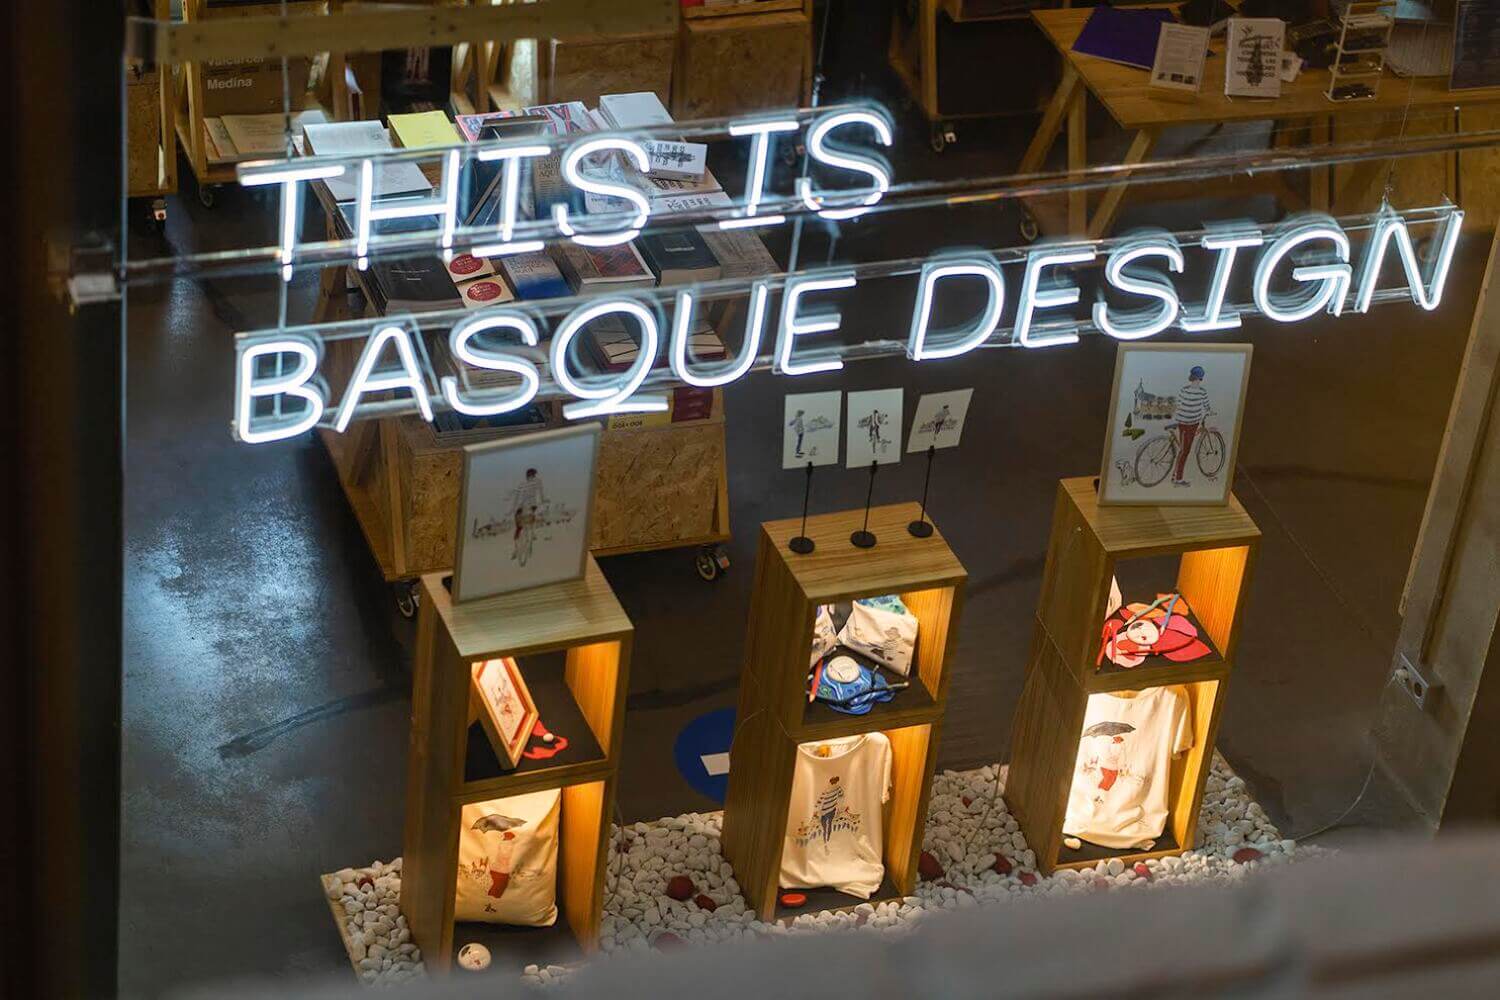 "This is Basque Design"